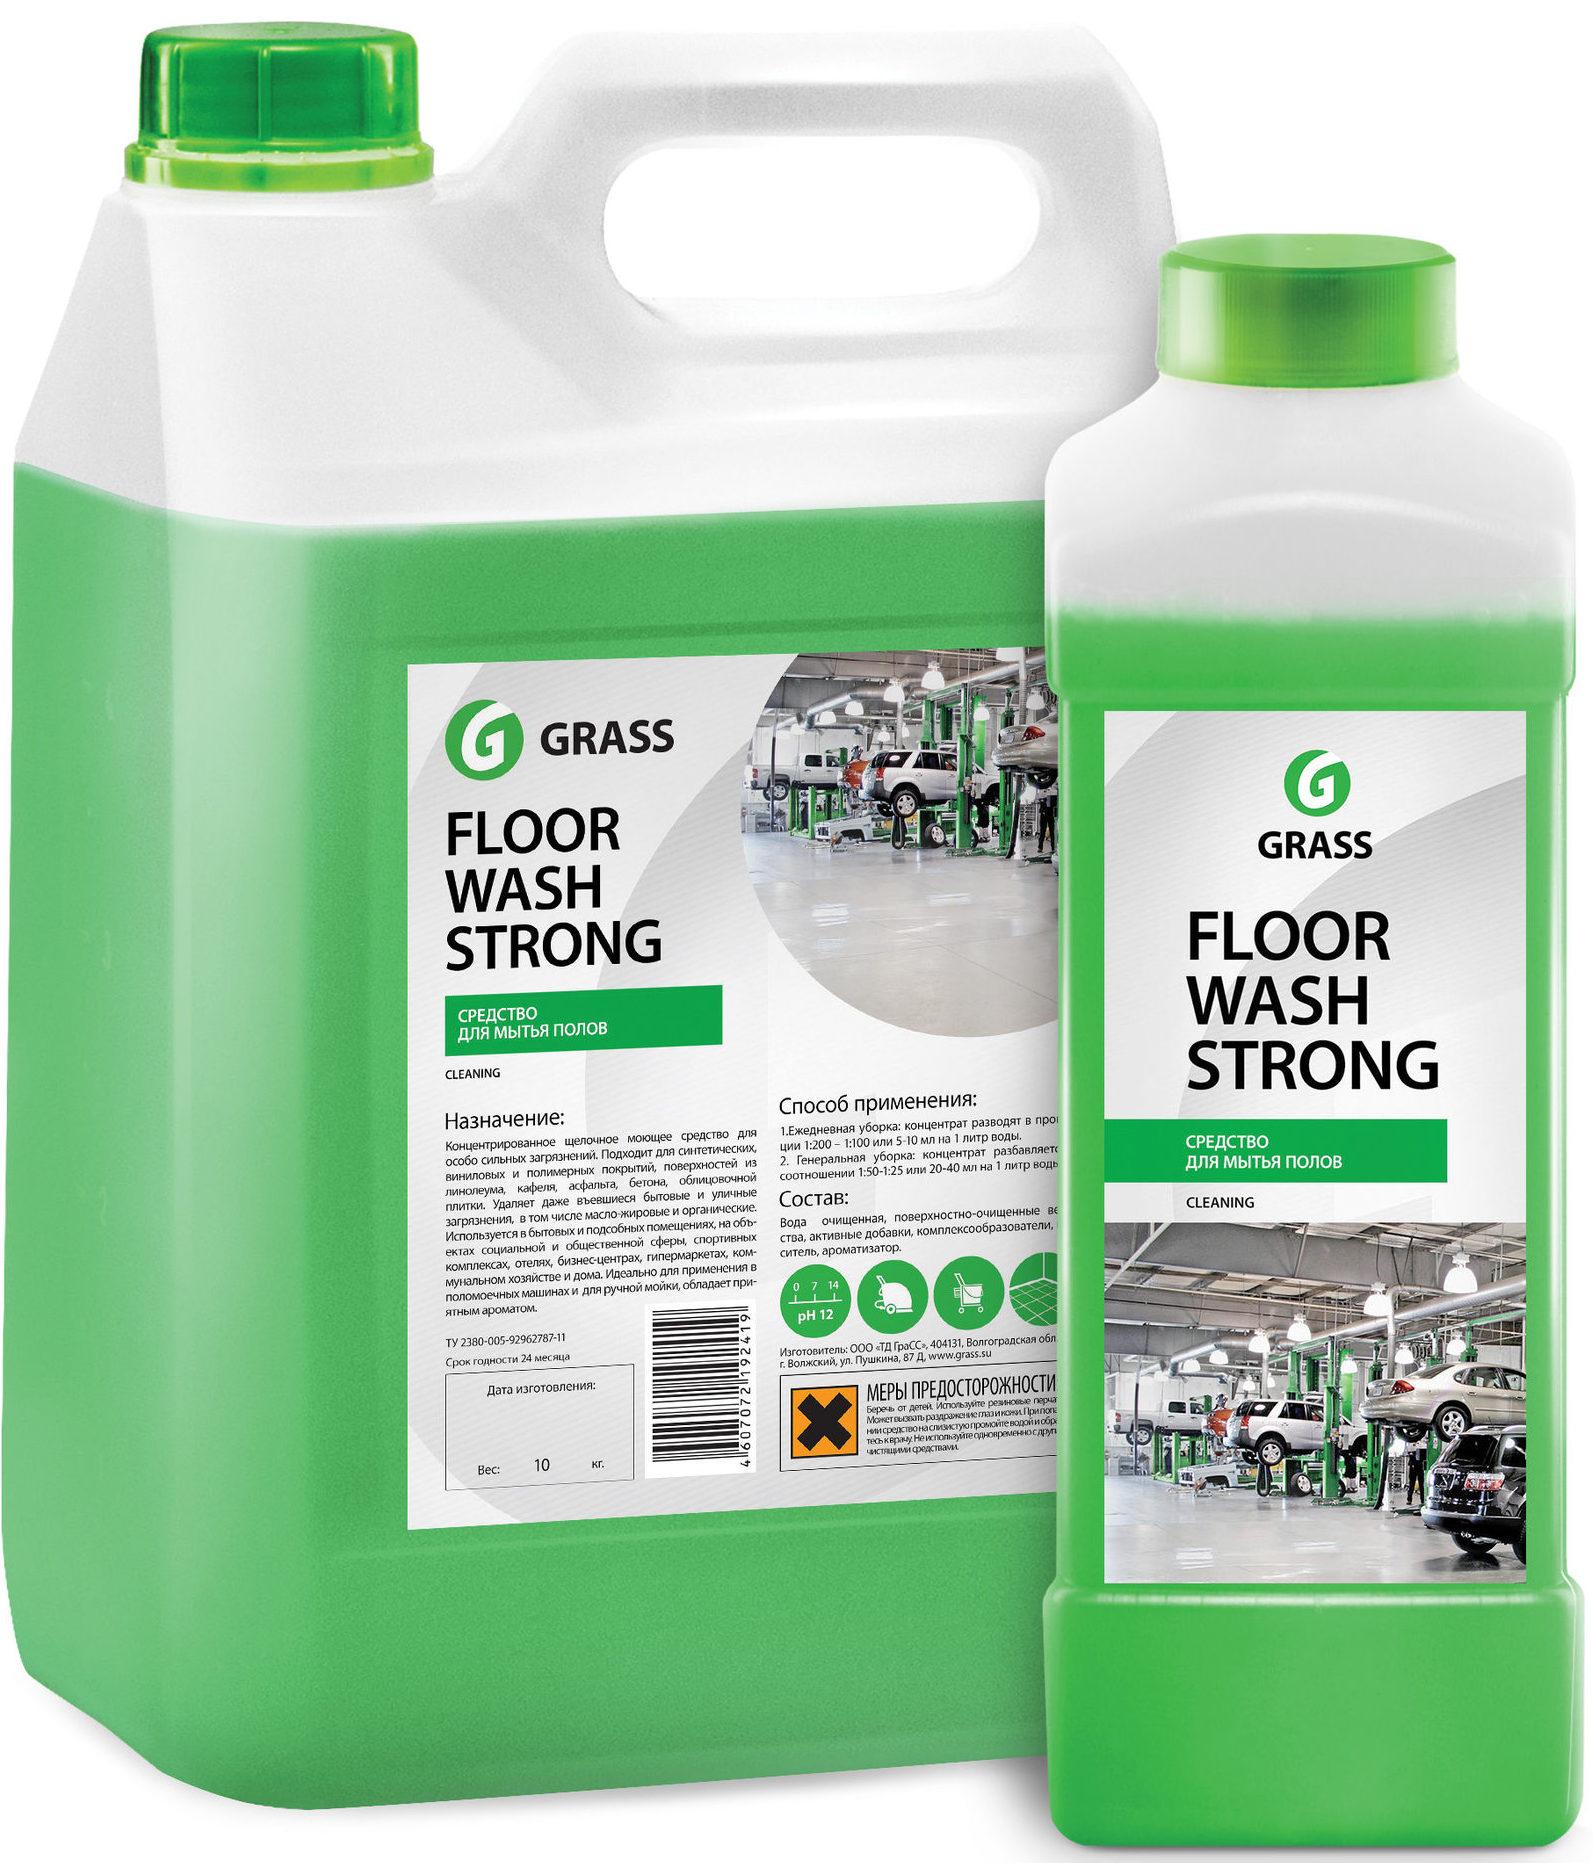 grass floor wash strong e1590771682549